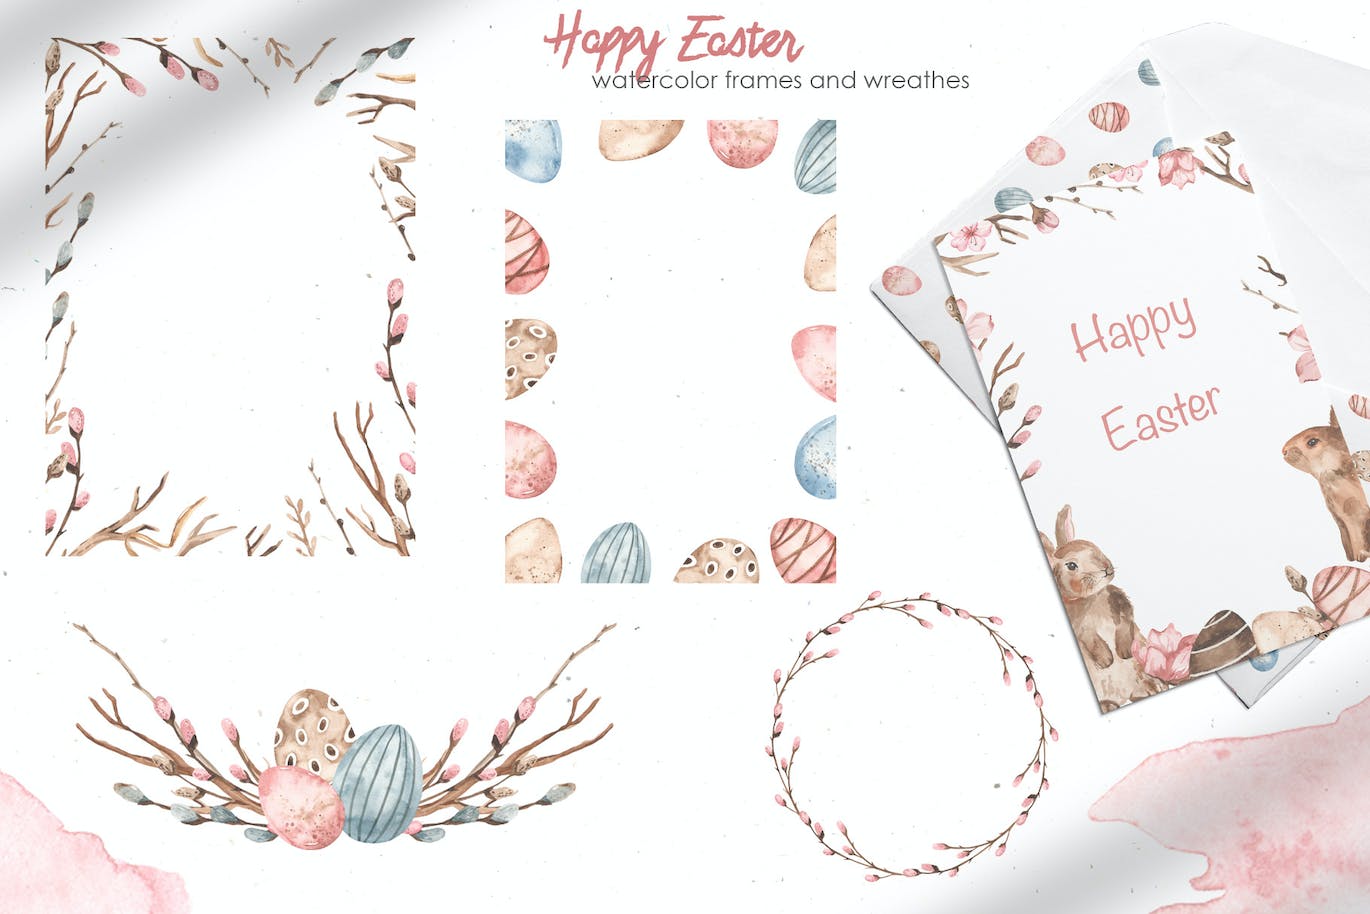 复活节快乐元素水彩画集 Happy Easter watercolor-7